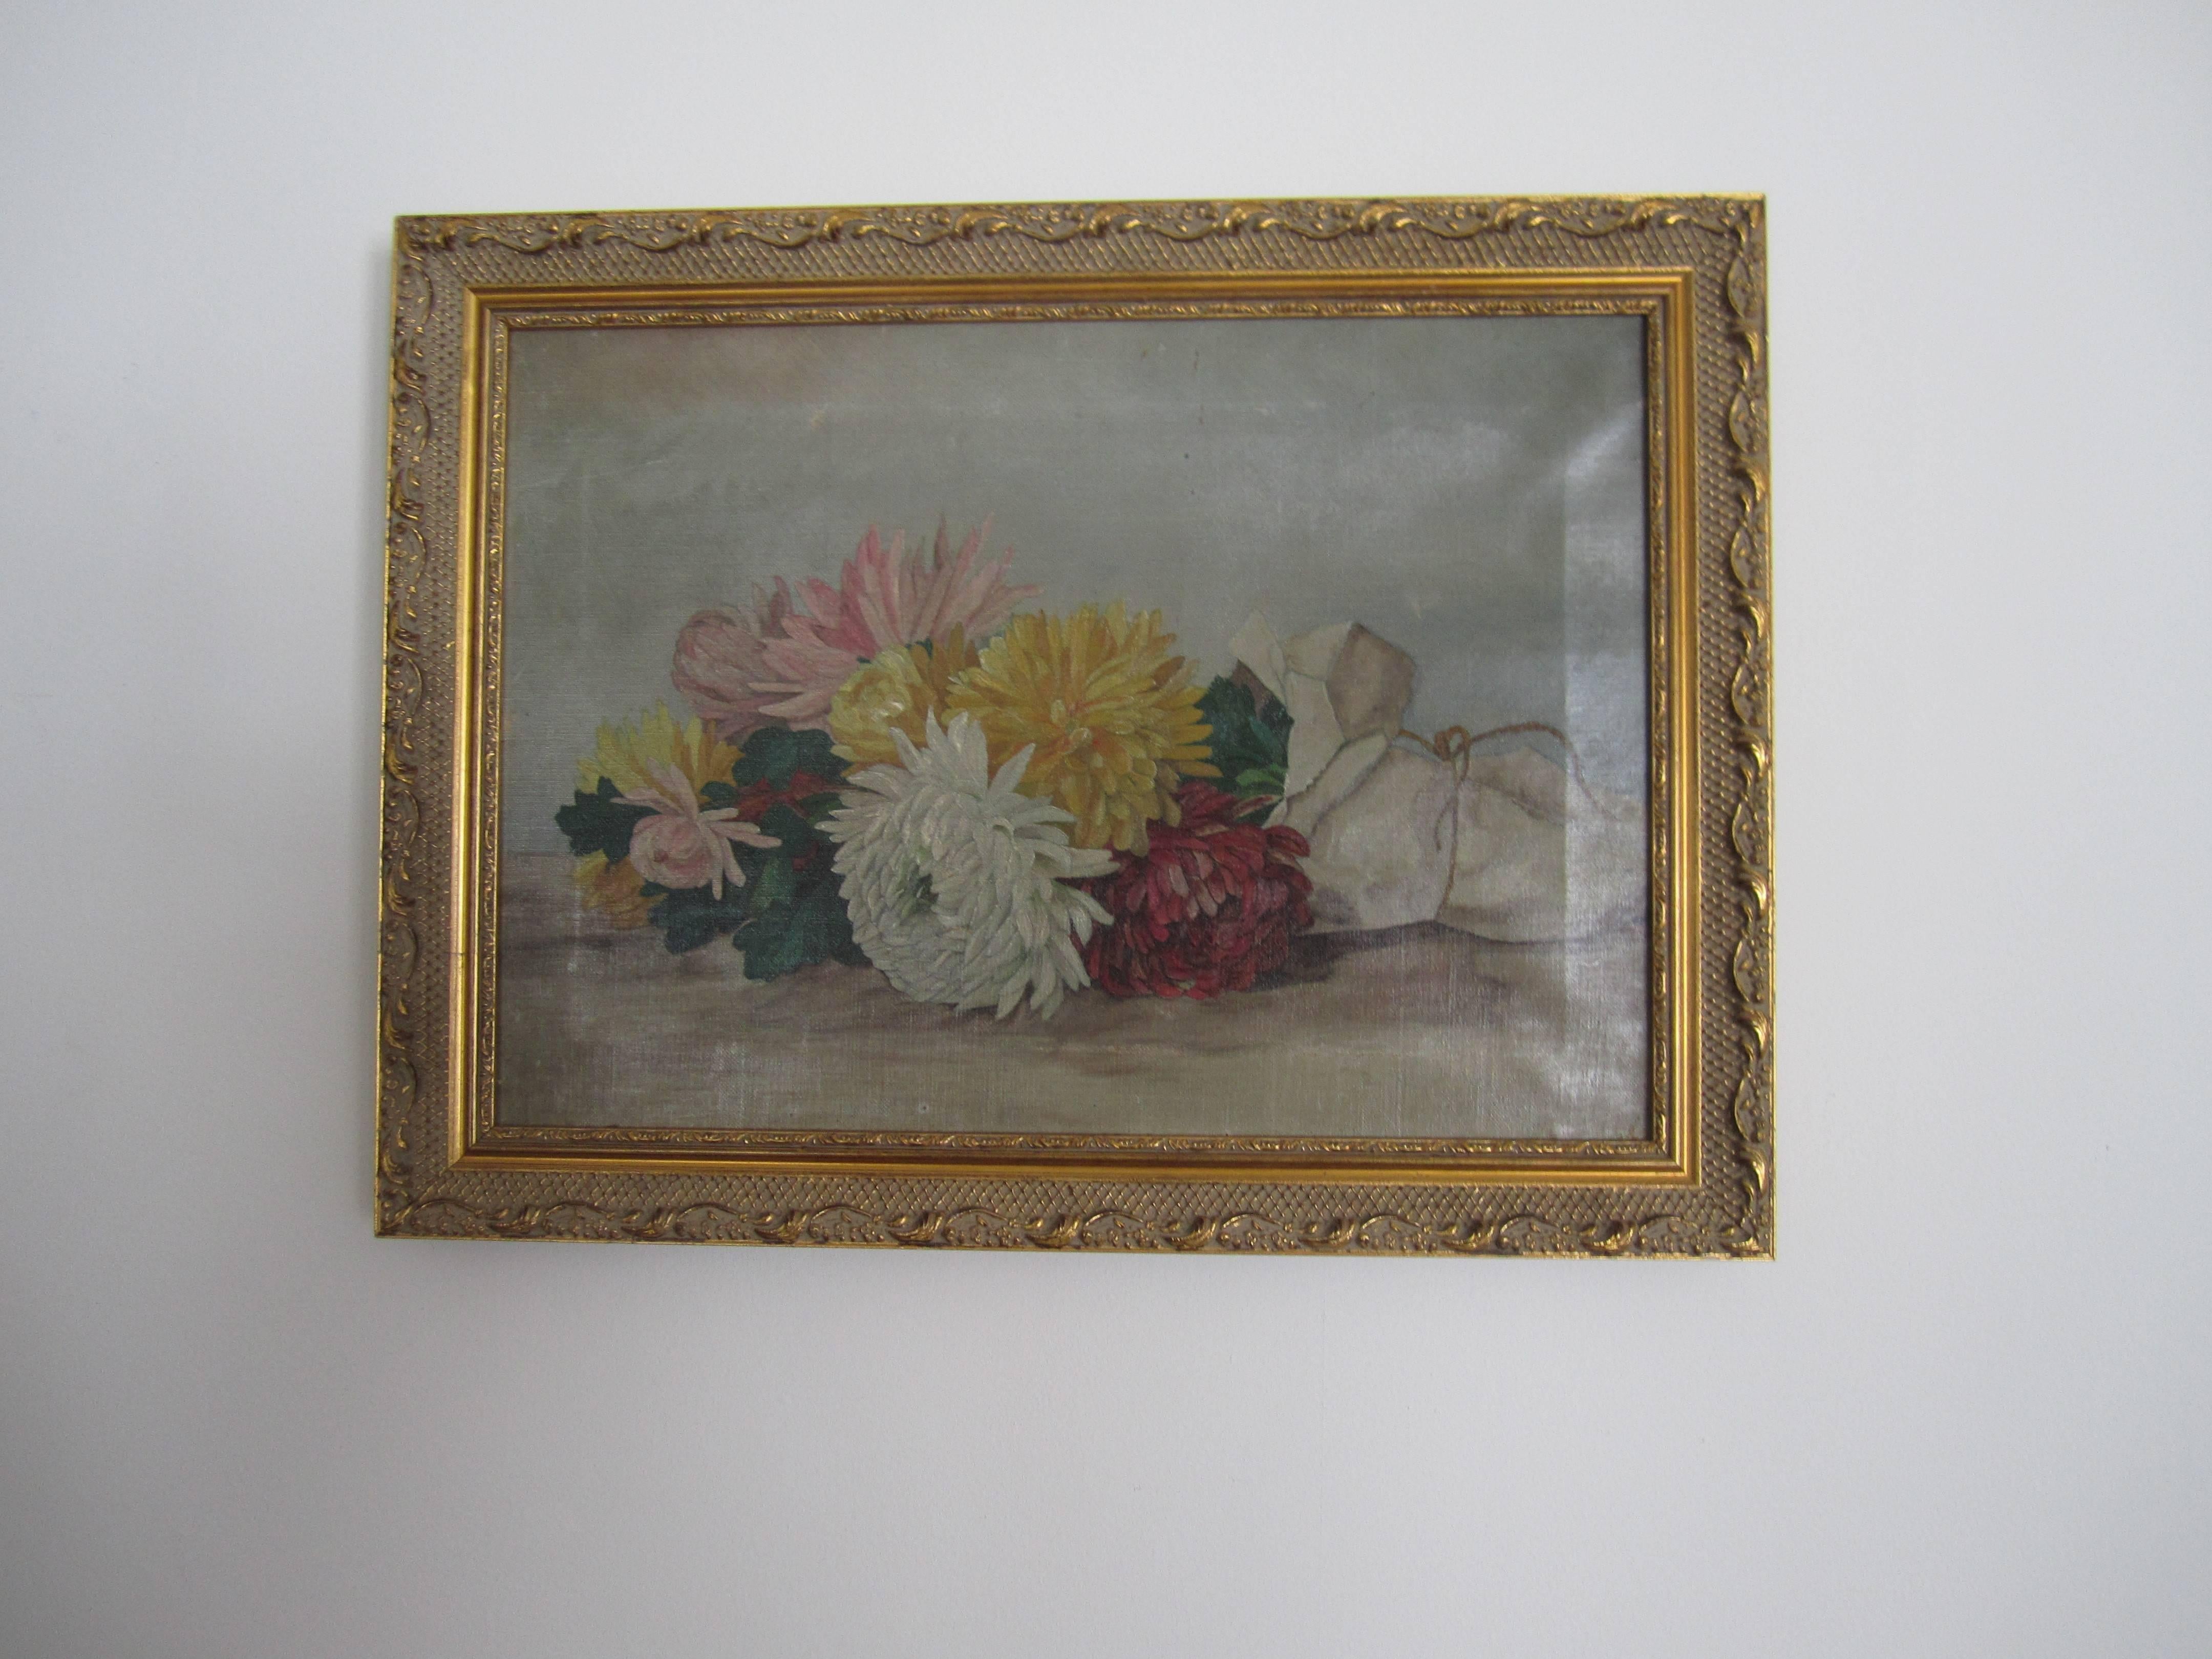 Une peinture de nature morte colorée de la fin du 19ème siècle - début du 20ème siècle. La peinture représente un 